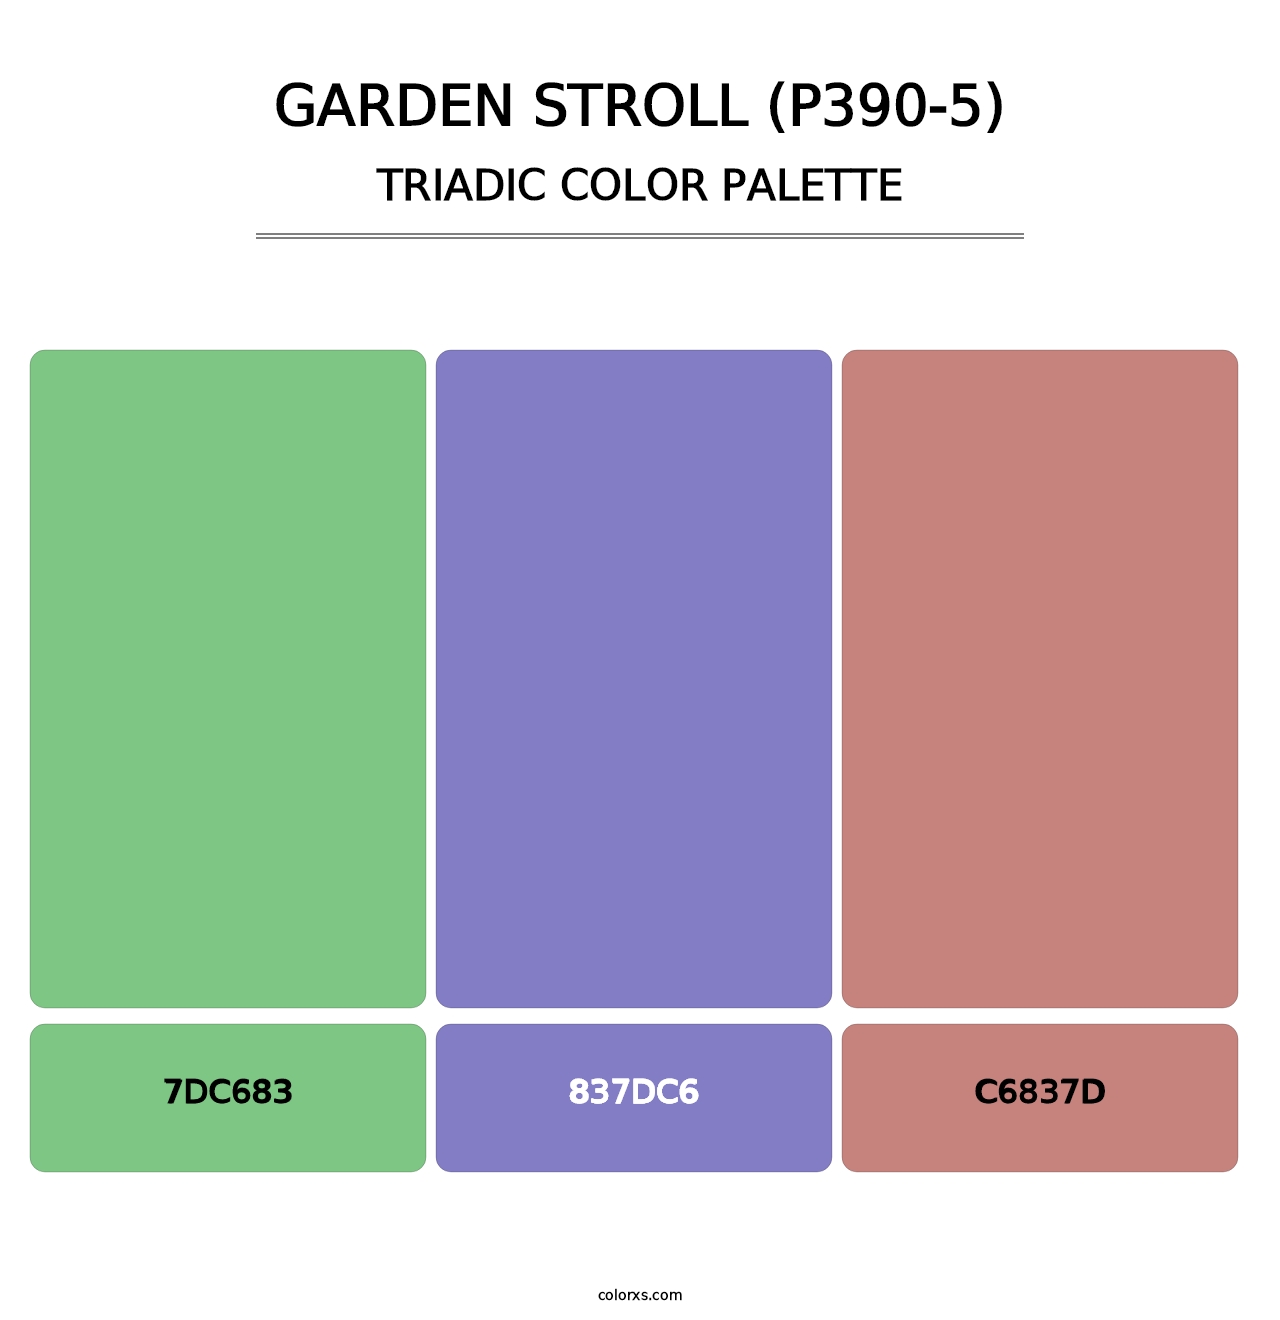 Garden Stroll (P390-5) - Triadic Color Palette